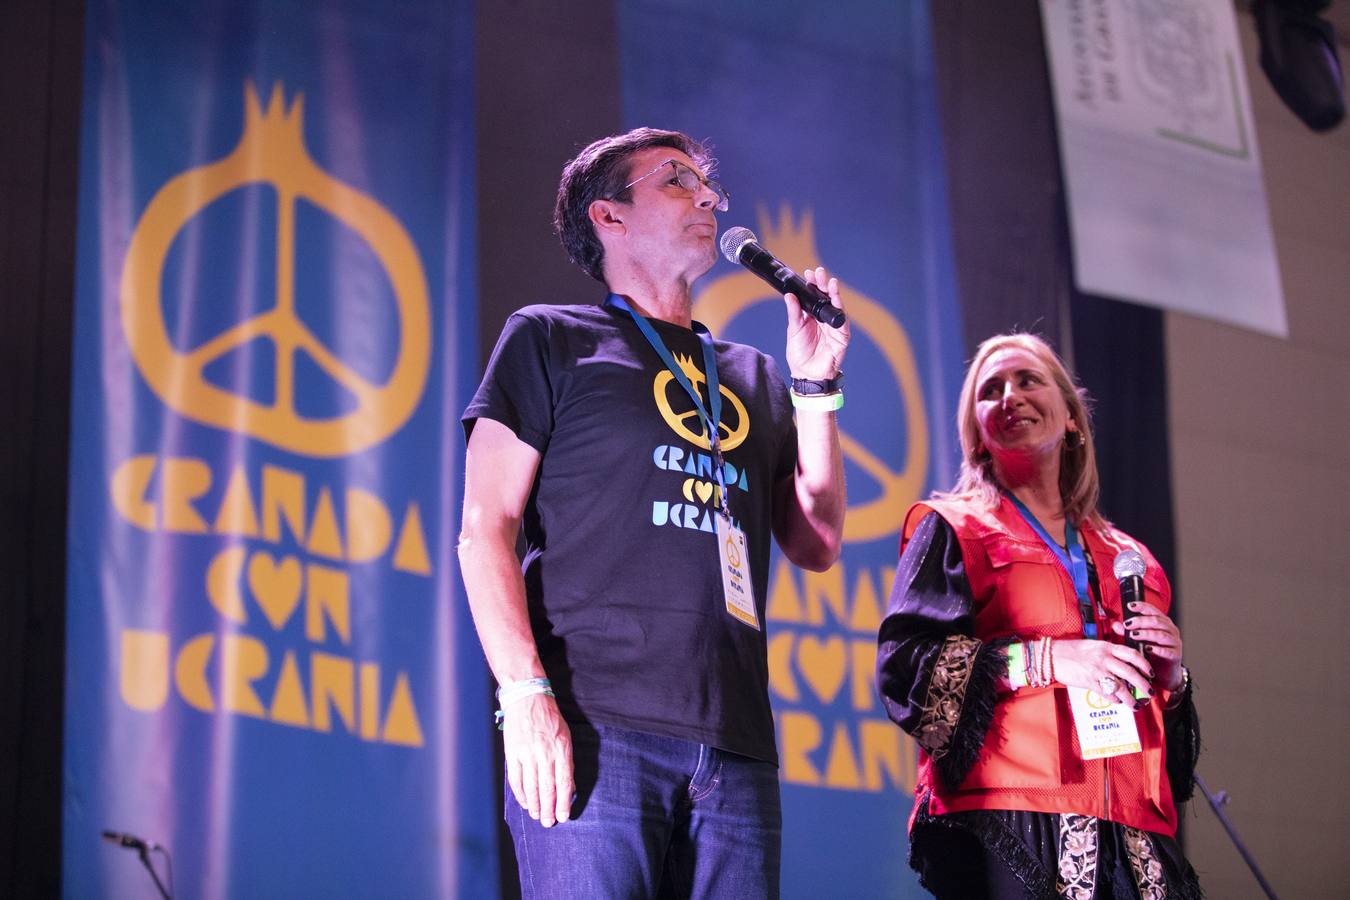 El fabuloso concierto de Granada para ayudar a Ucrania, en imágenes